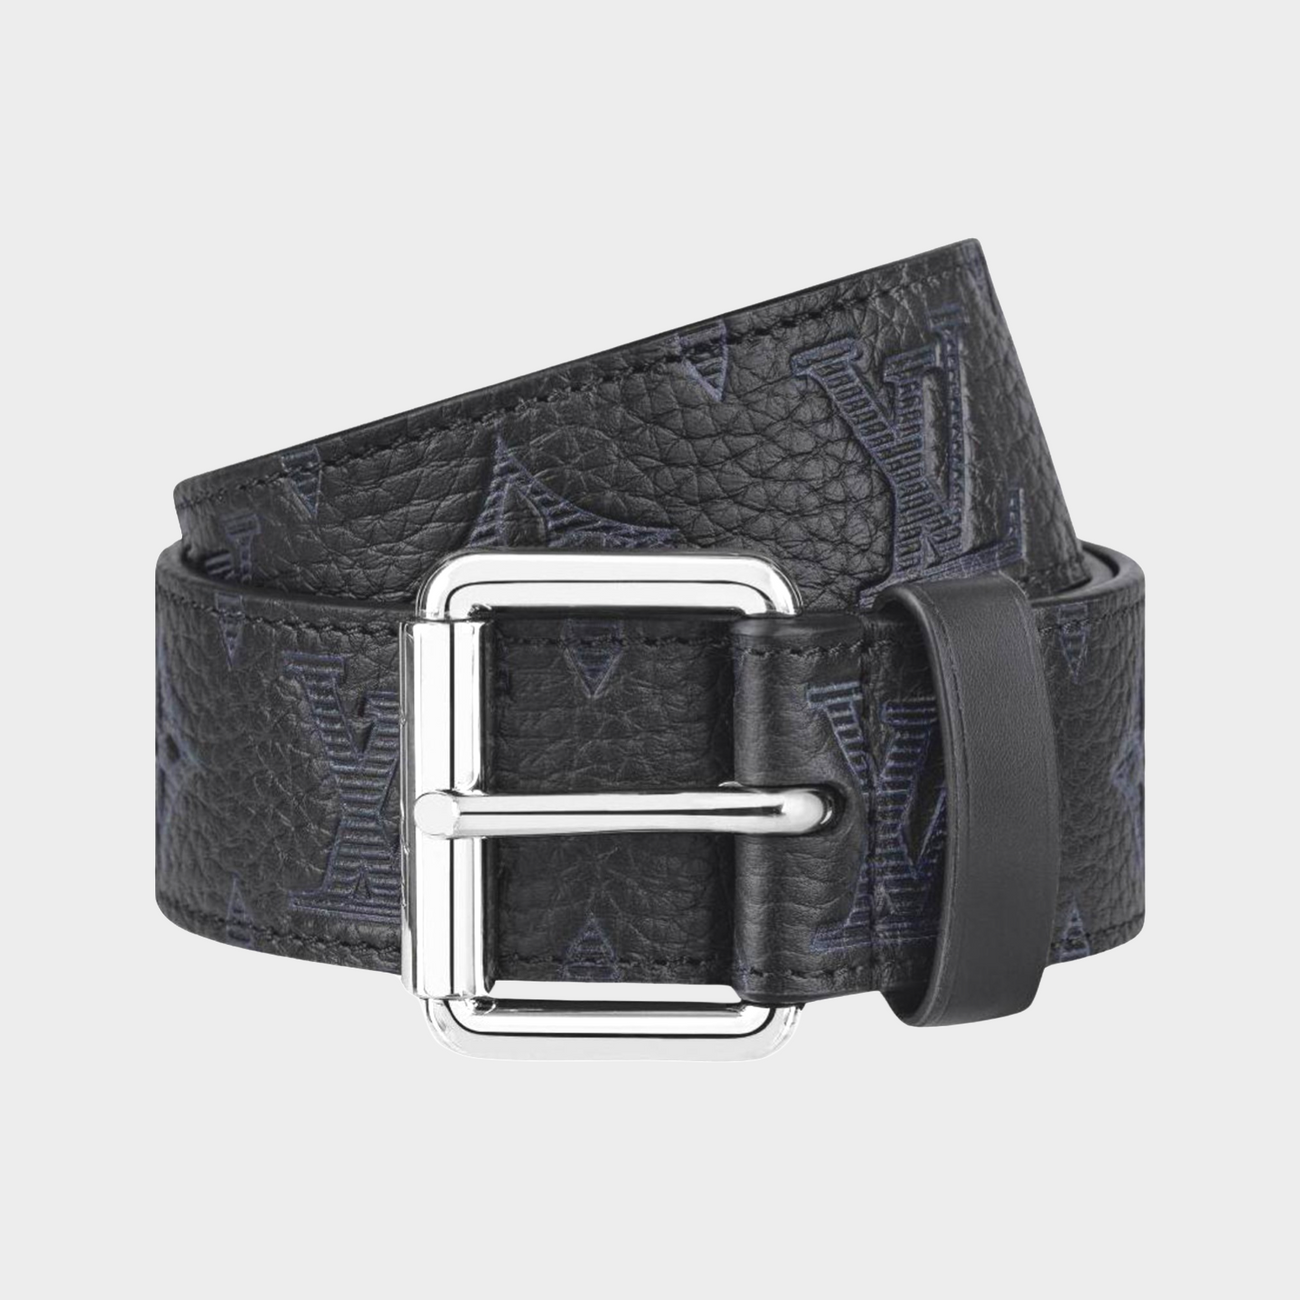 Louis Vuitton - Authenticated Belt - Leather Black Plain for Men, Never Worn